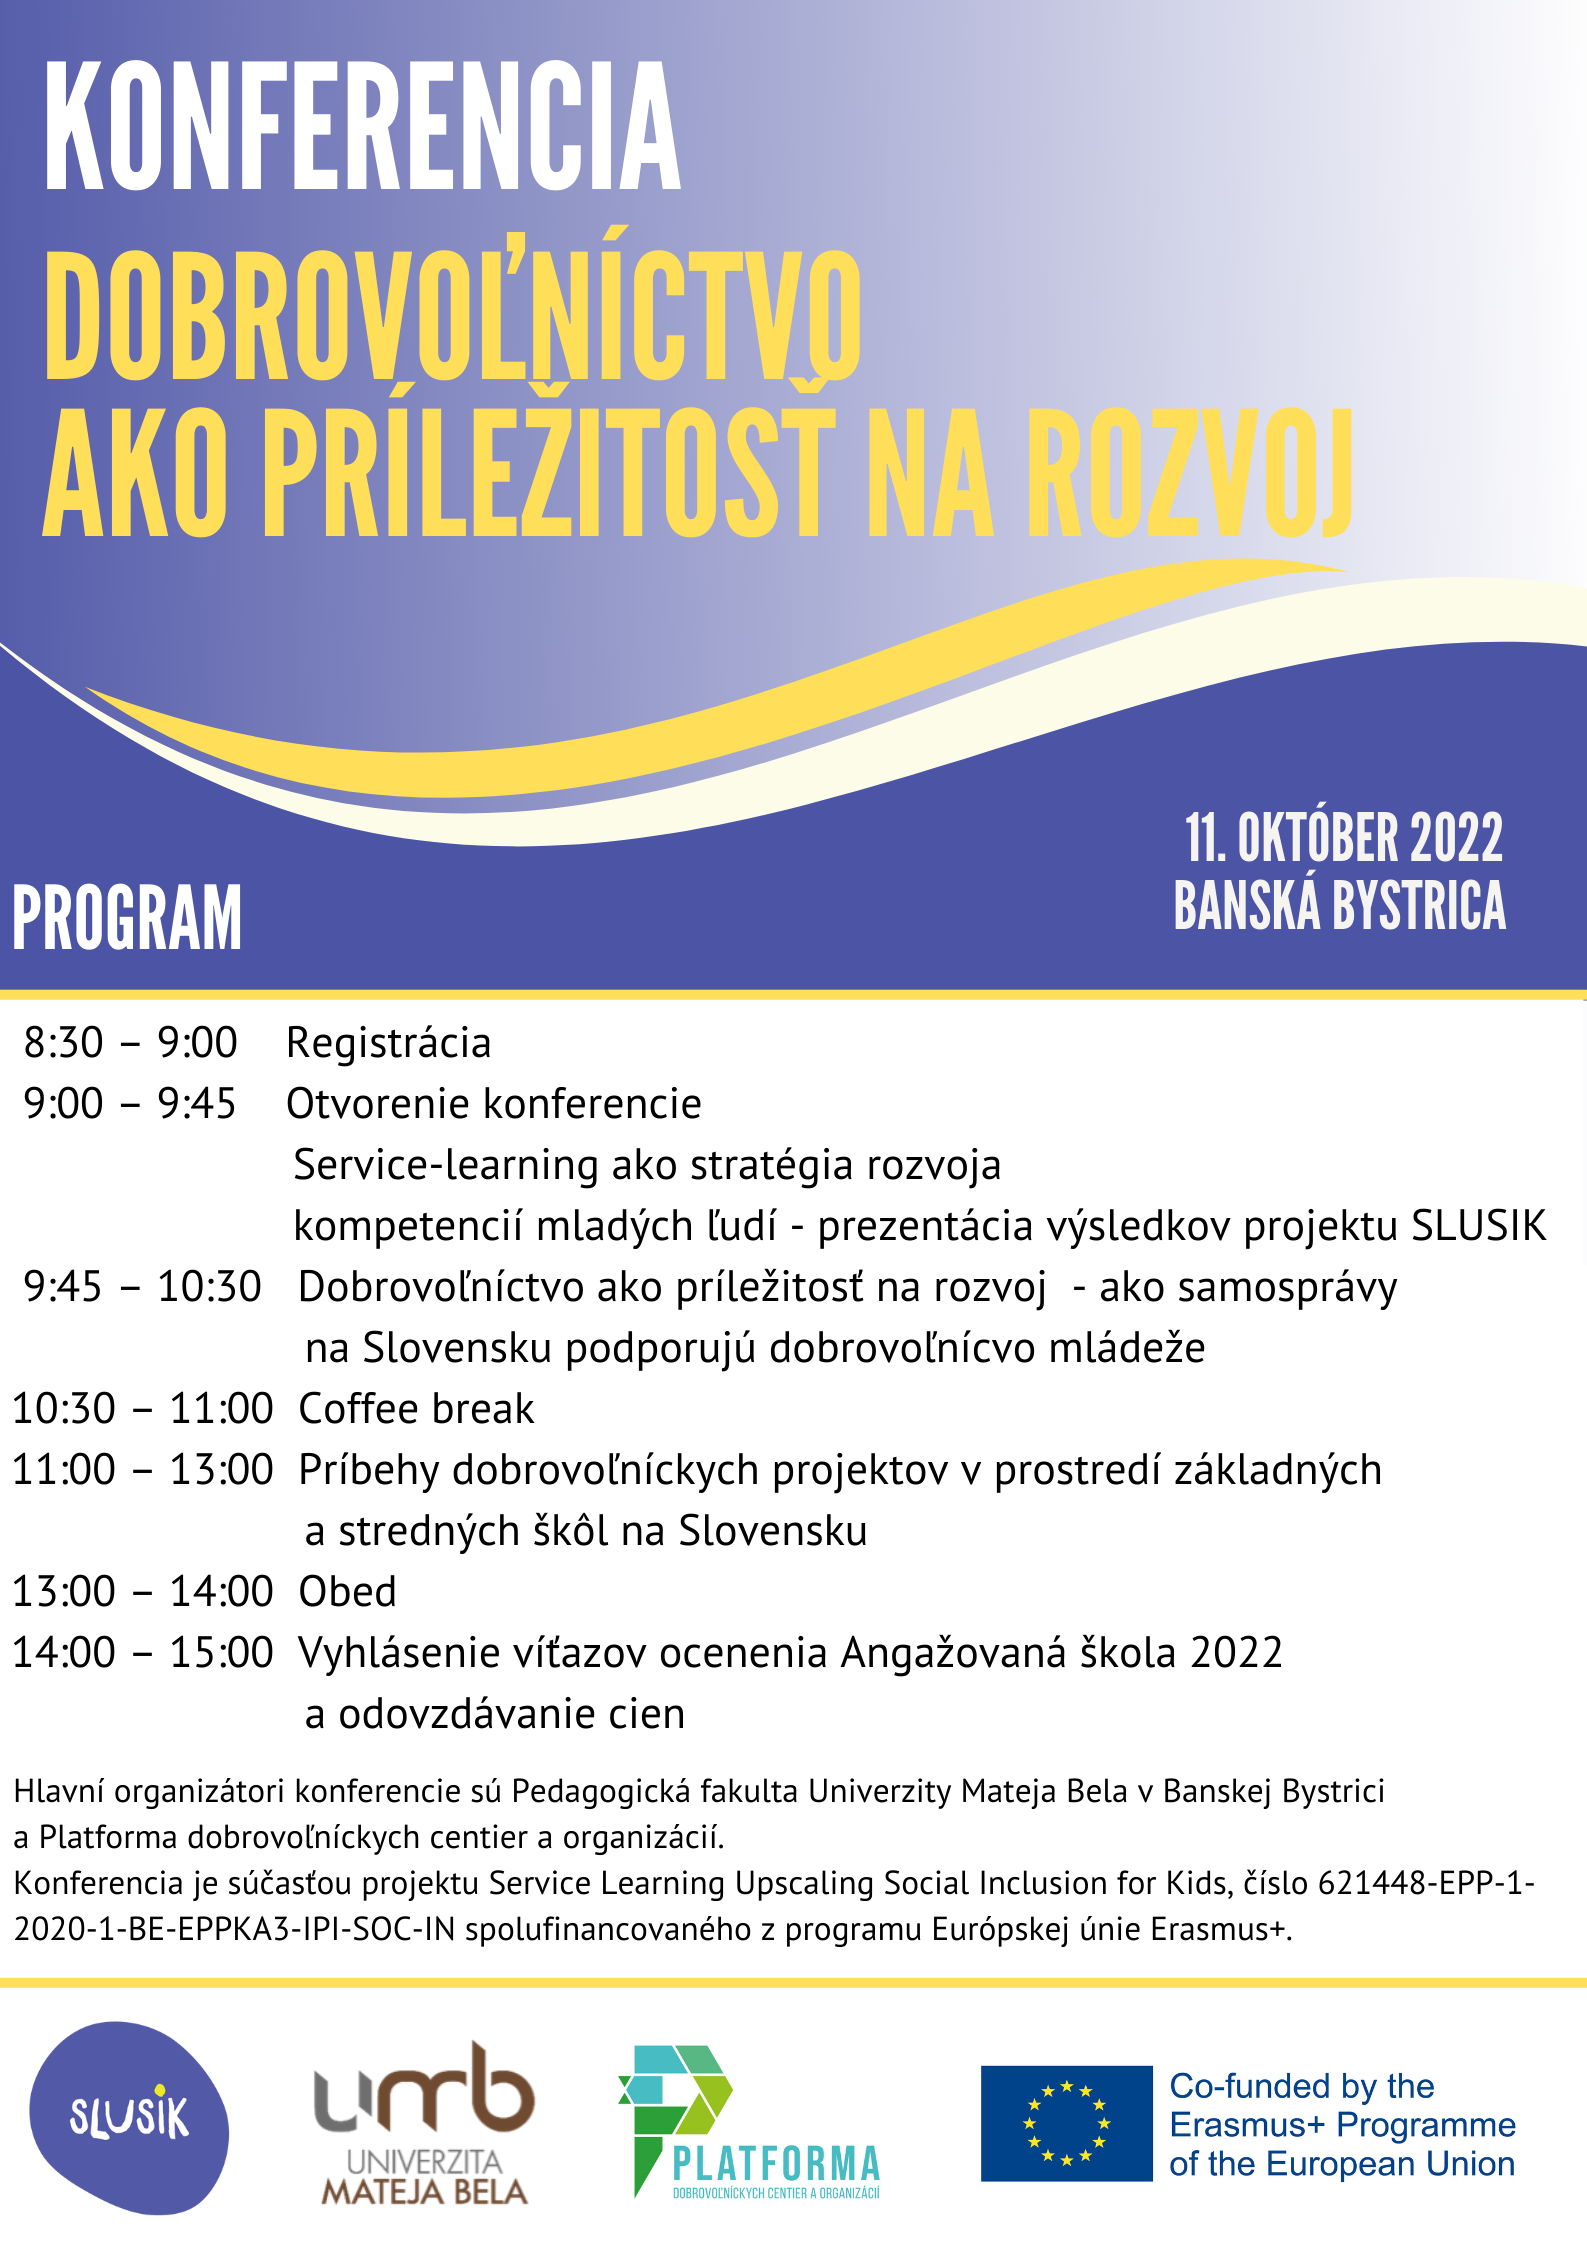 Konferencia program